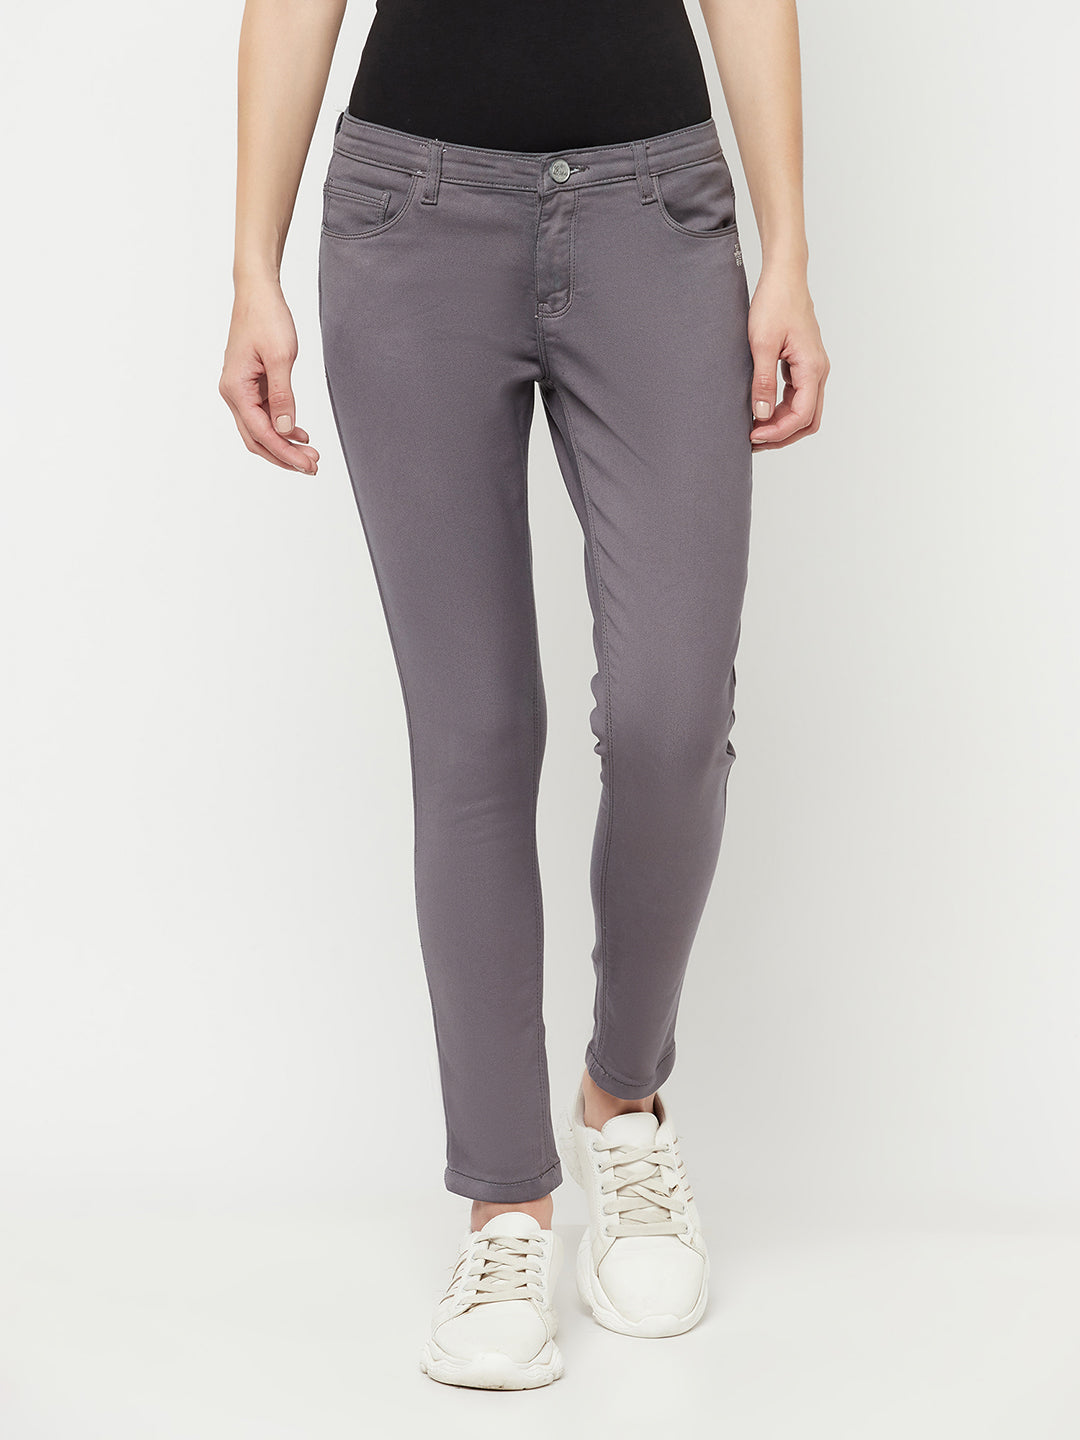 Grey Jeans - Women Jeans